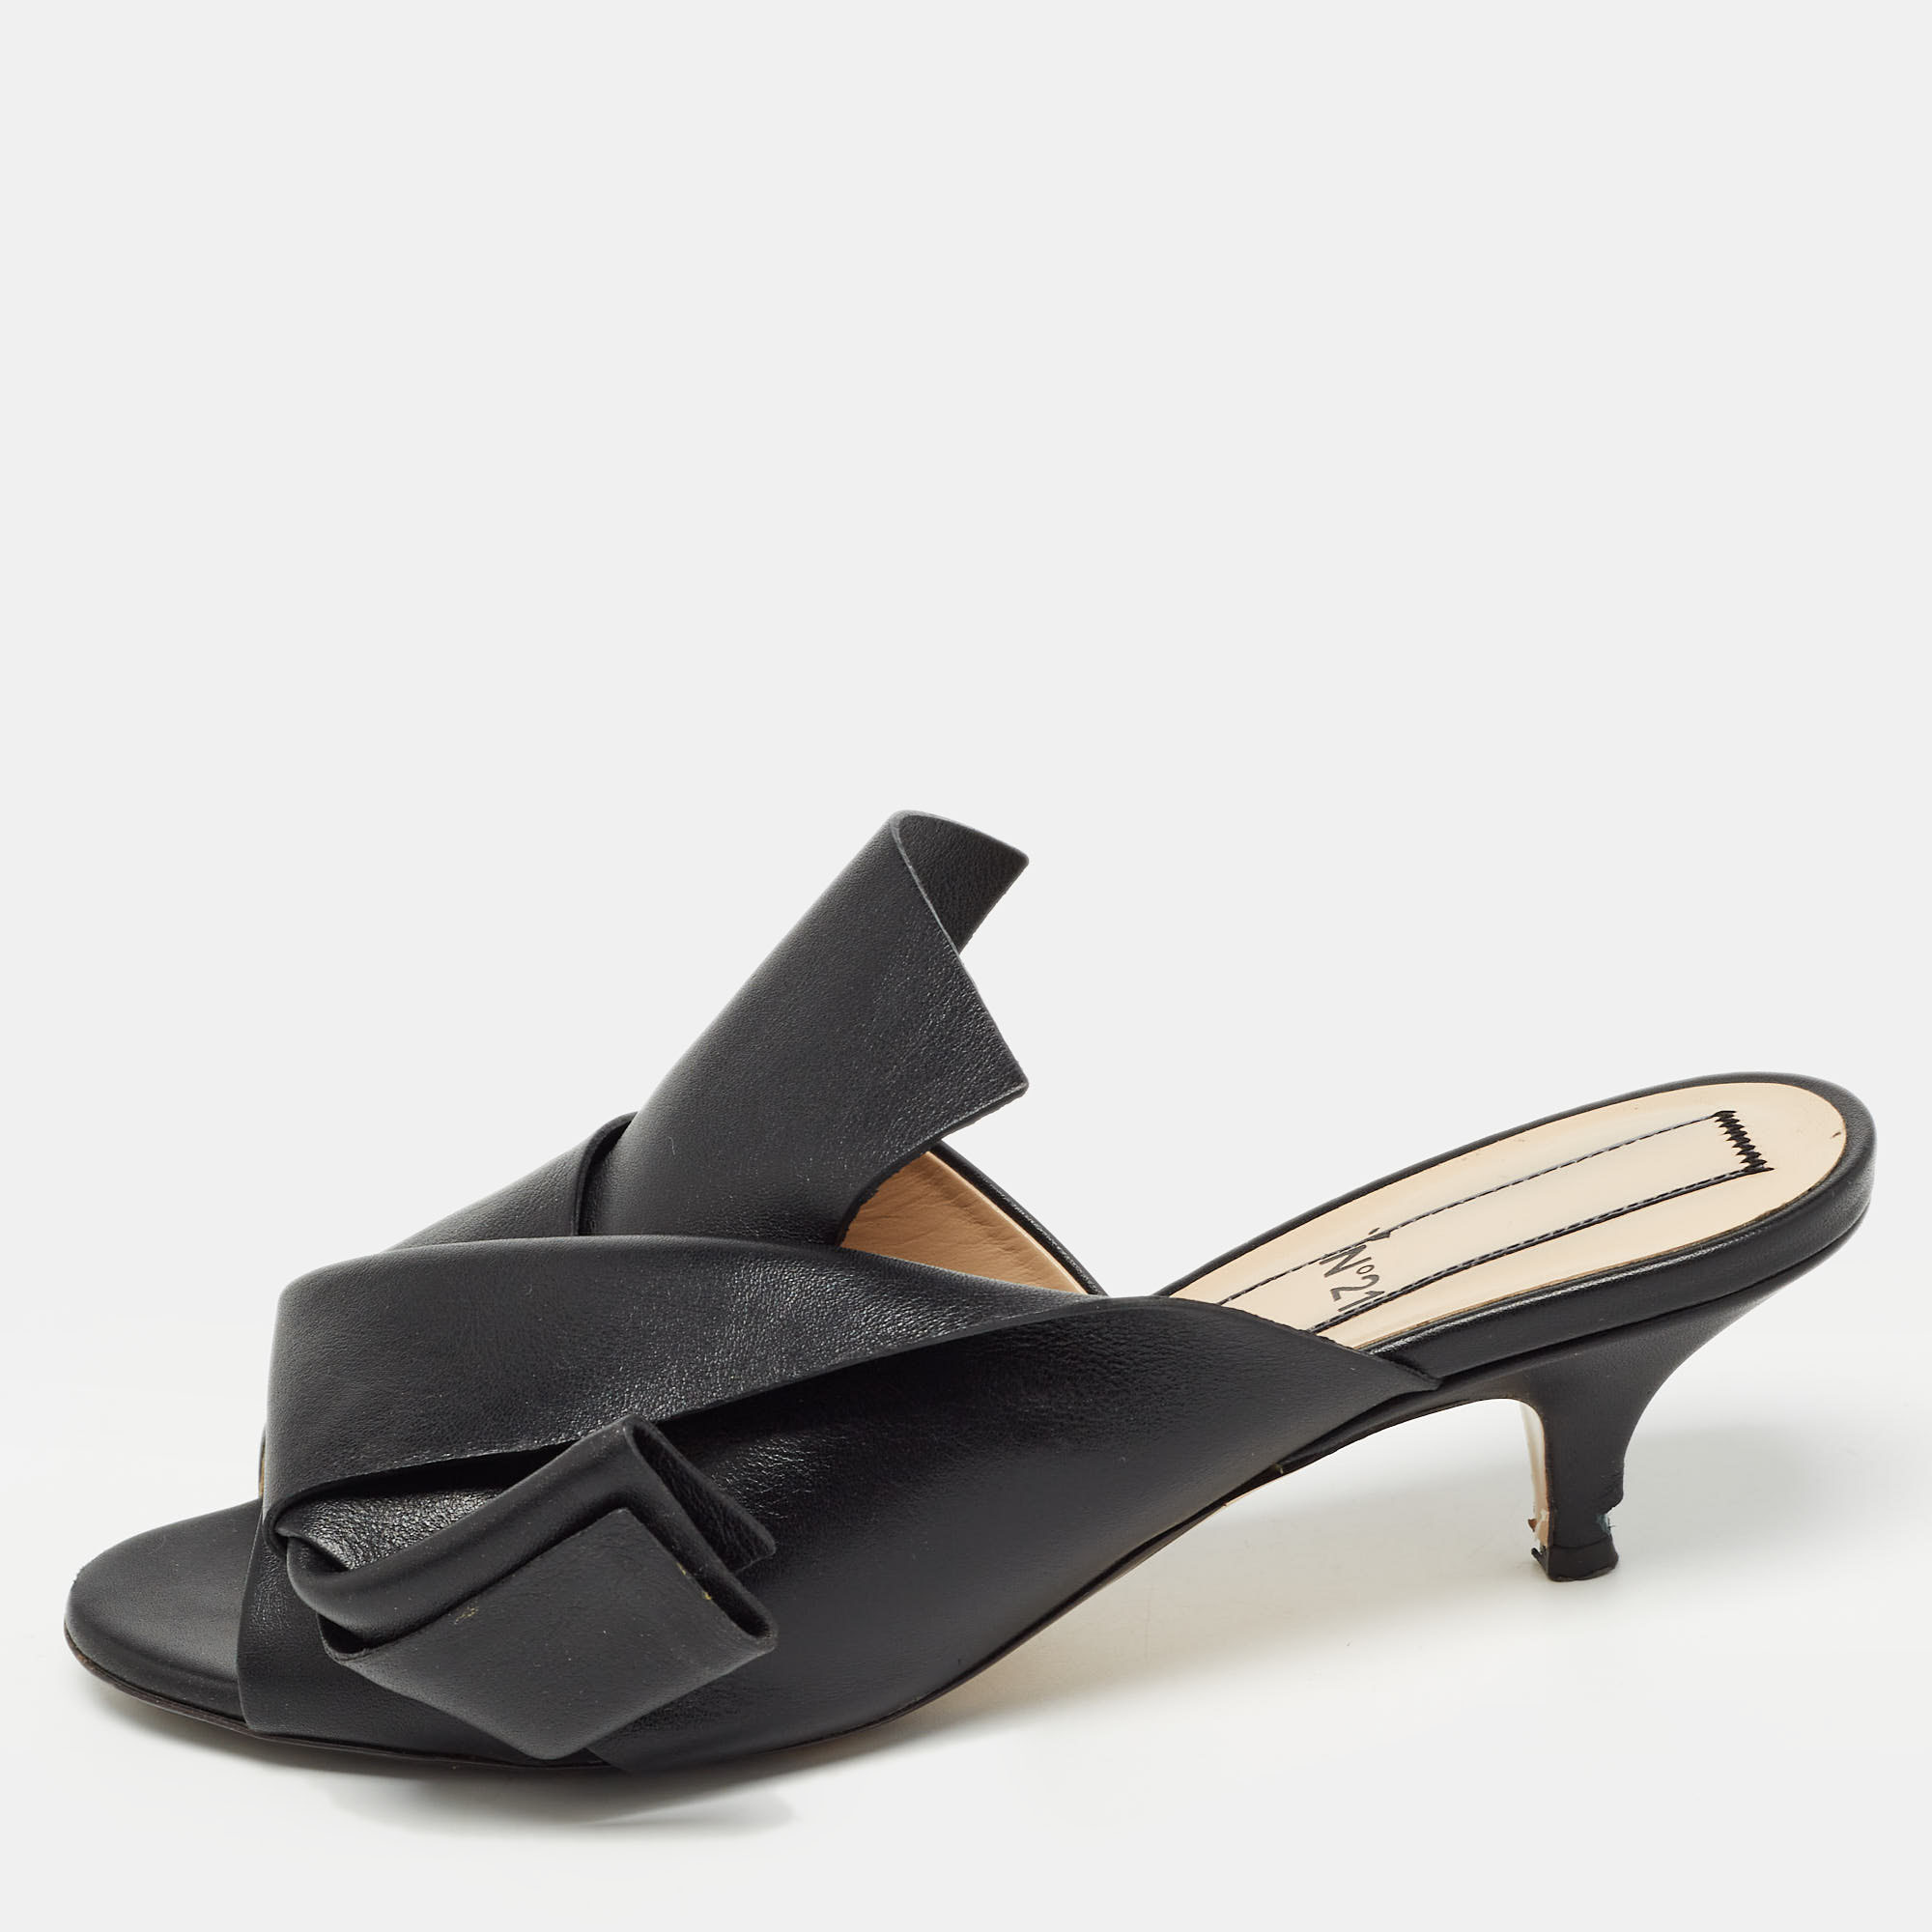 N21 Black Leather Knot Slide Sandals Size 37